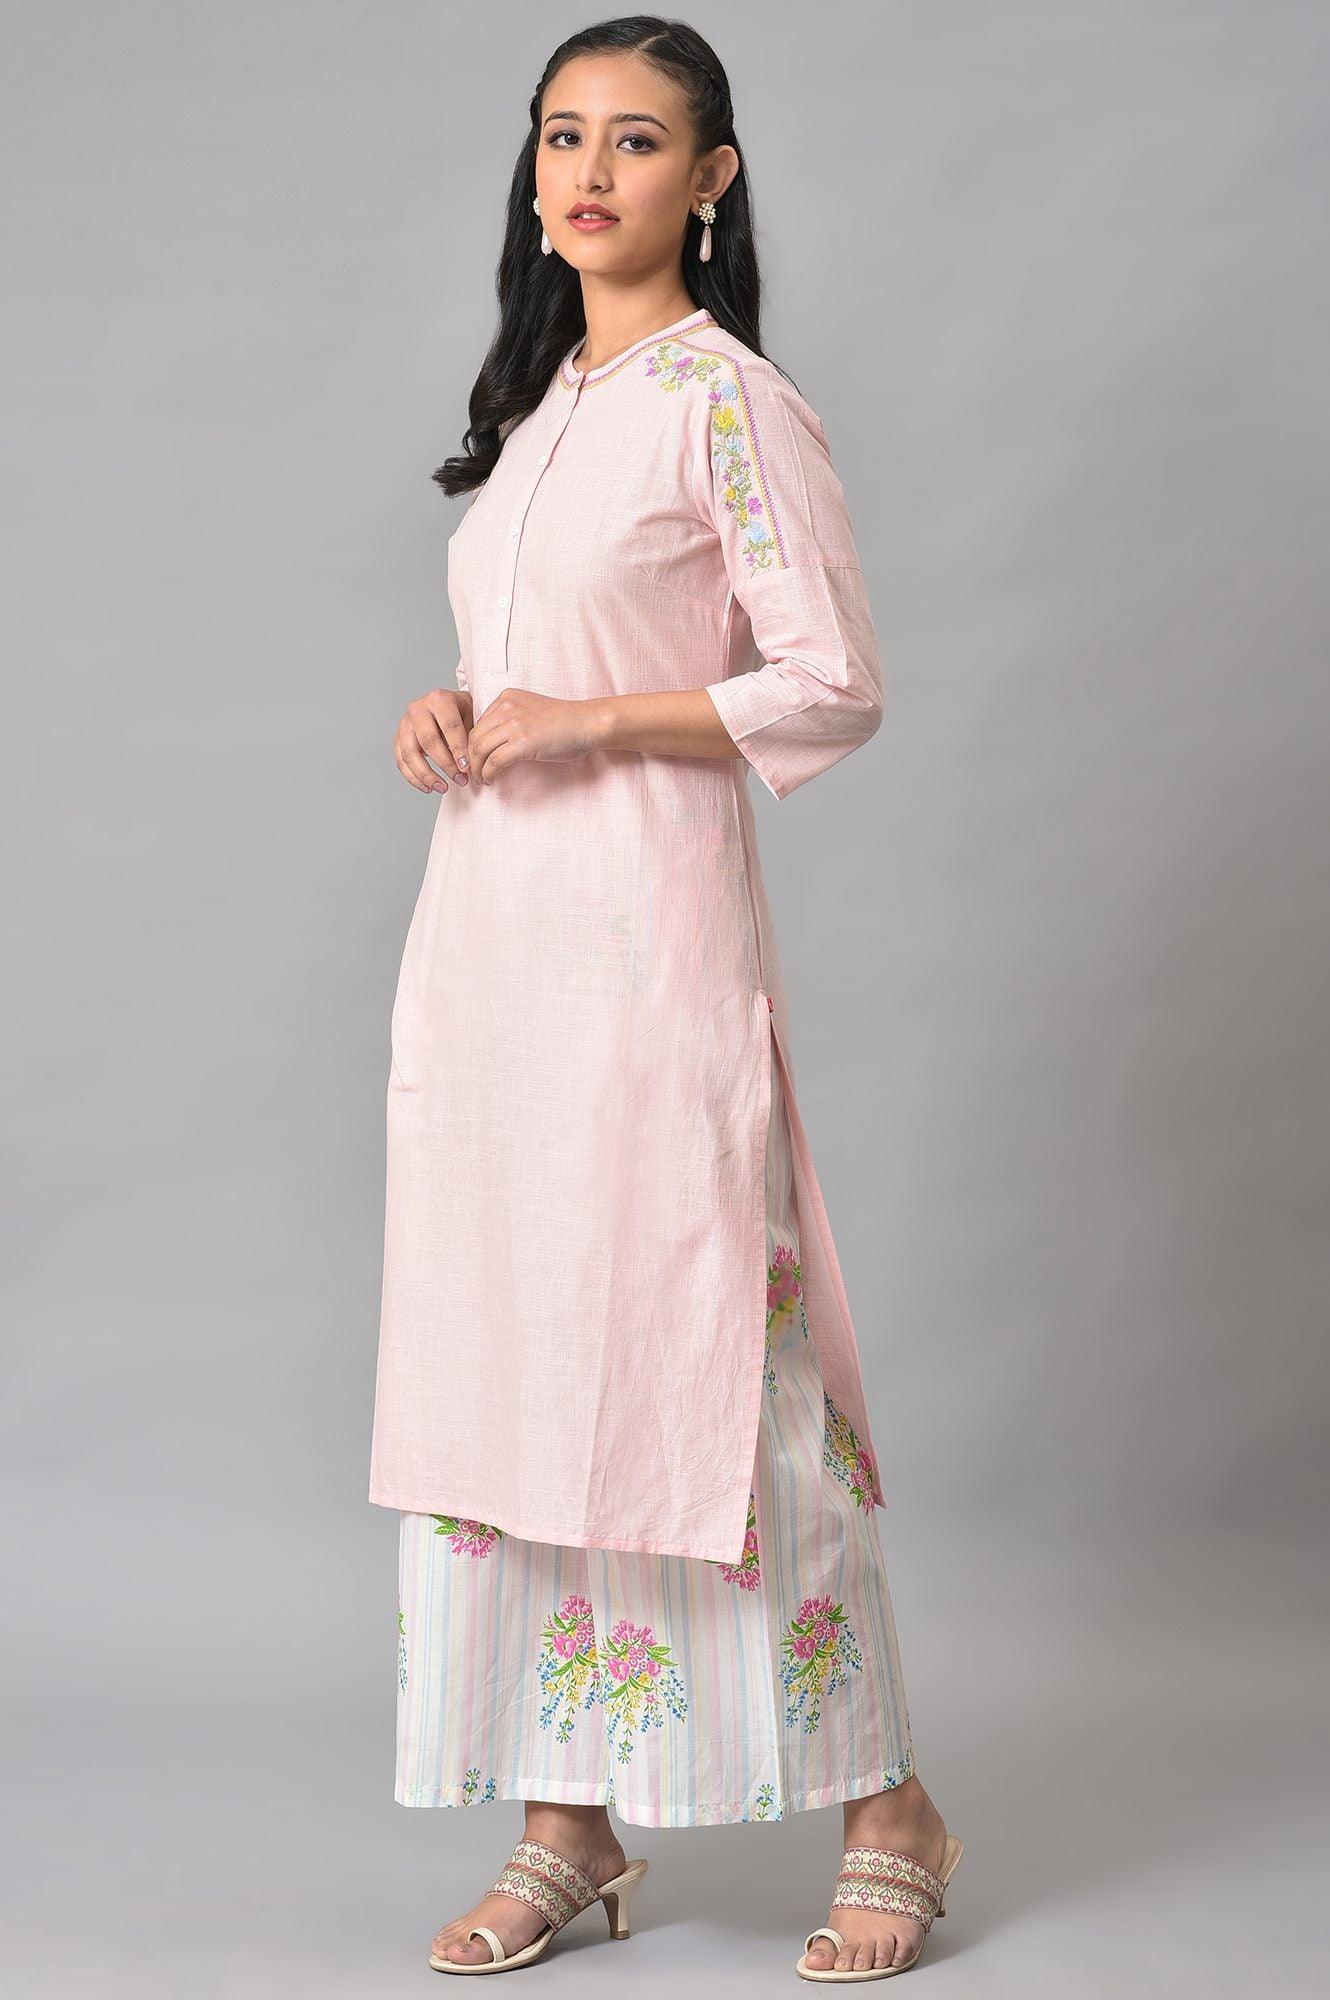 Light Pink Mandarin Collar kurta With Embroidery - wforwoman